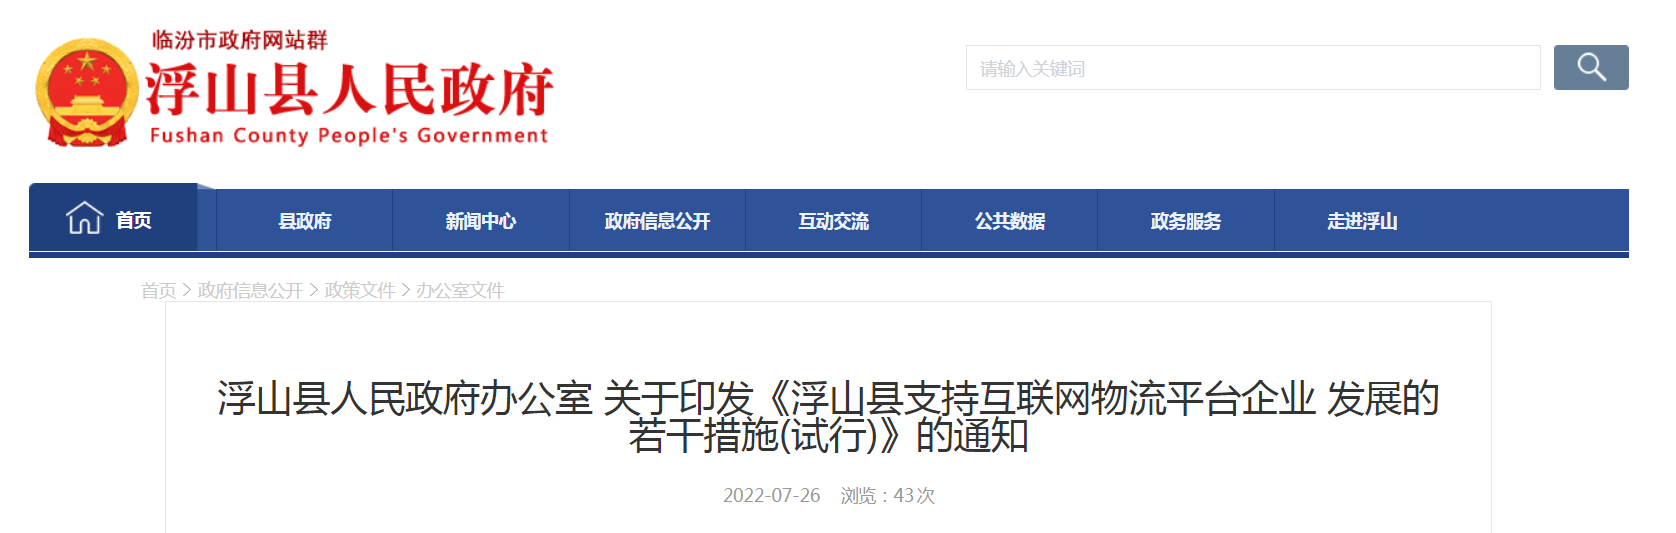 浮山县支持互联网物流平台企业发展的若干措施(试行)